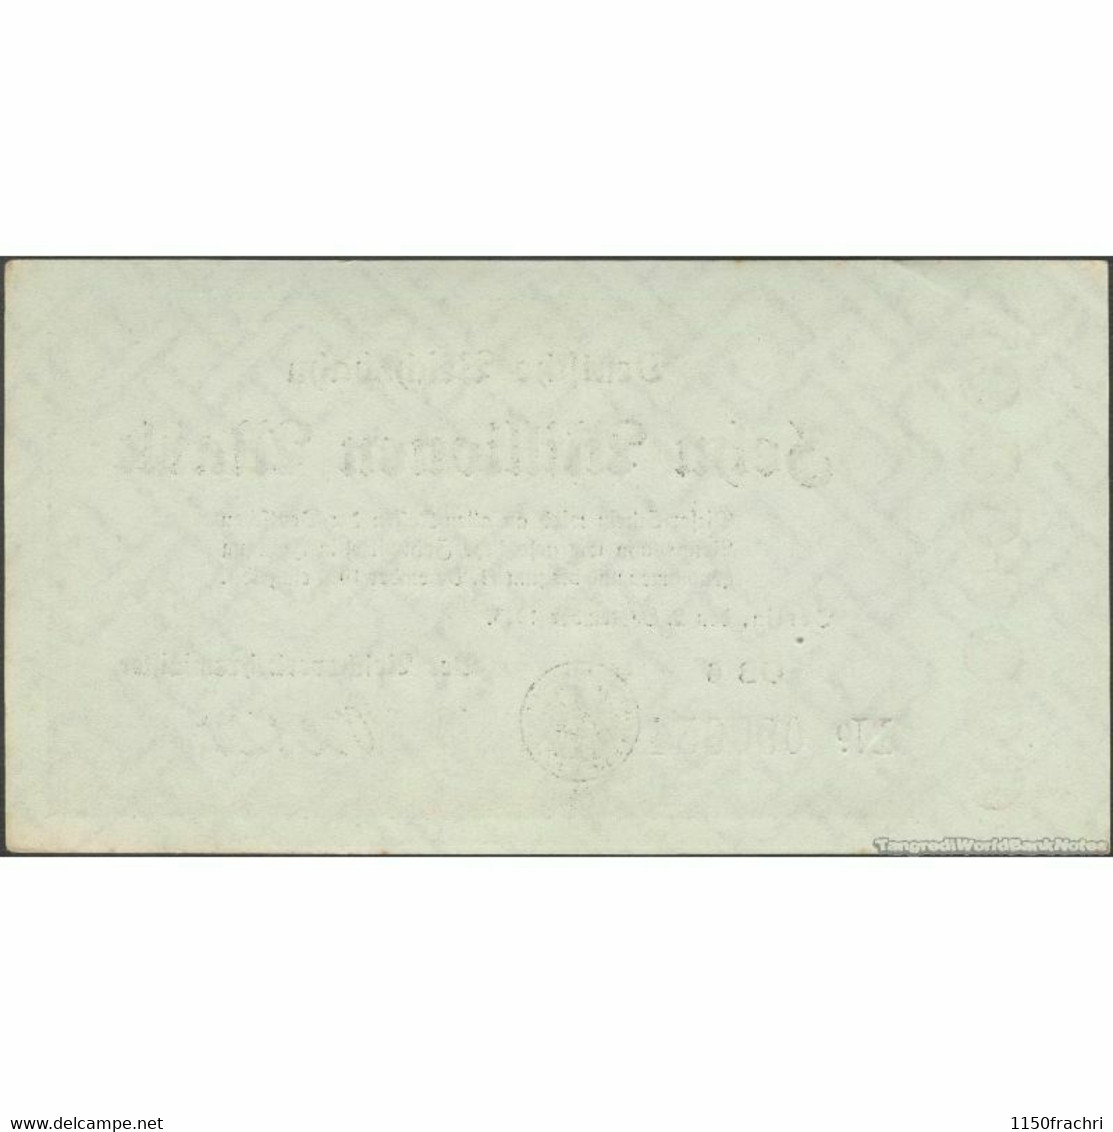 Banknote - Deutsche Reichsbahn 1923 - 10 Millionen Mark - 10 Millionen Mark